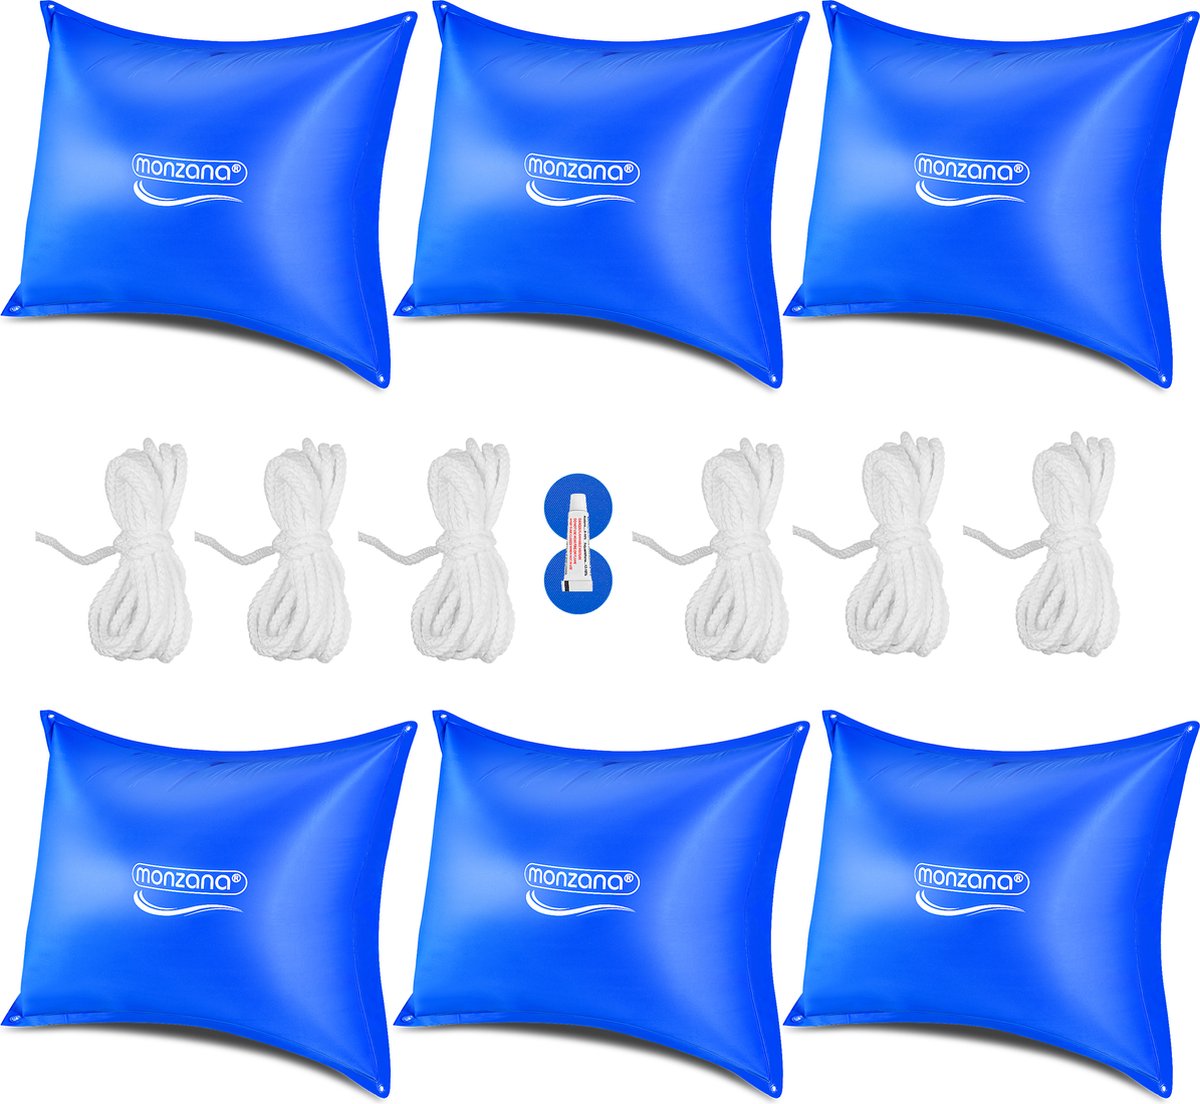 Monzana Zwembadkussen XL 6 stuks - Chloorbestendig PVC – Blauw